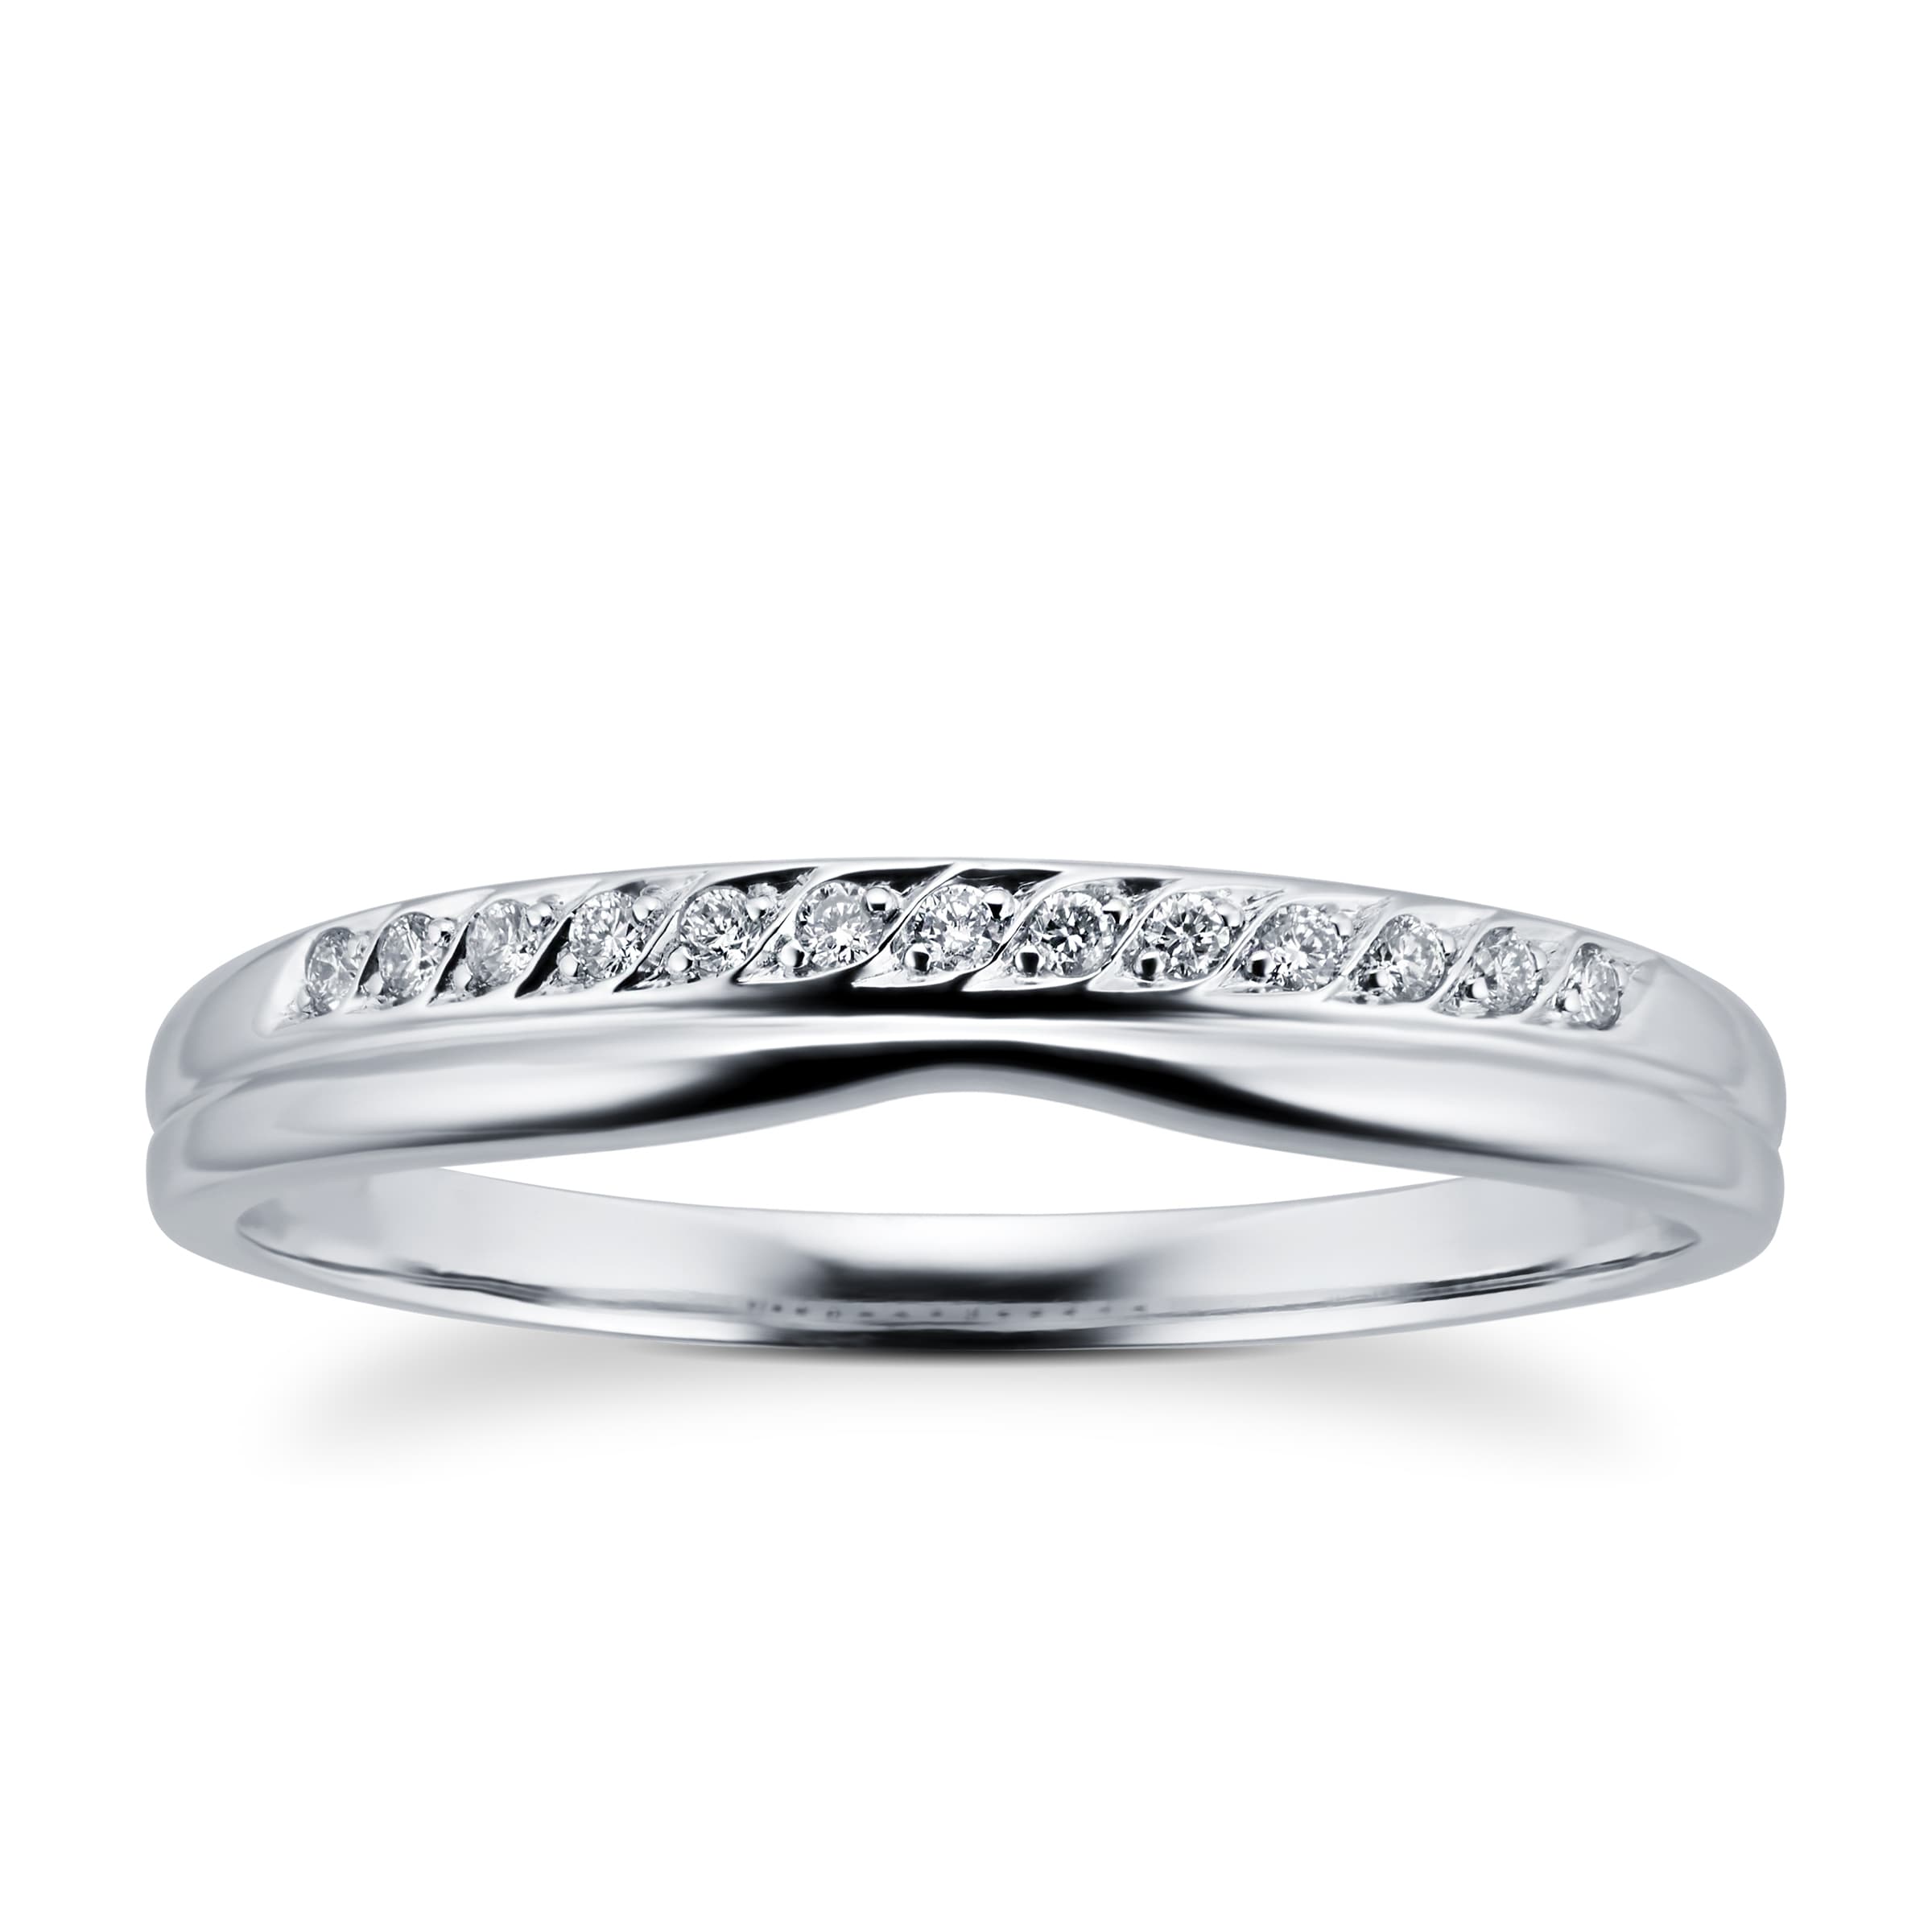 Ladies Diamond Set Shaped Wedding Ring In 18 Carat White Gold - Ring Size N